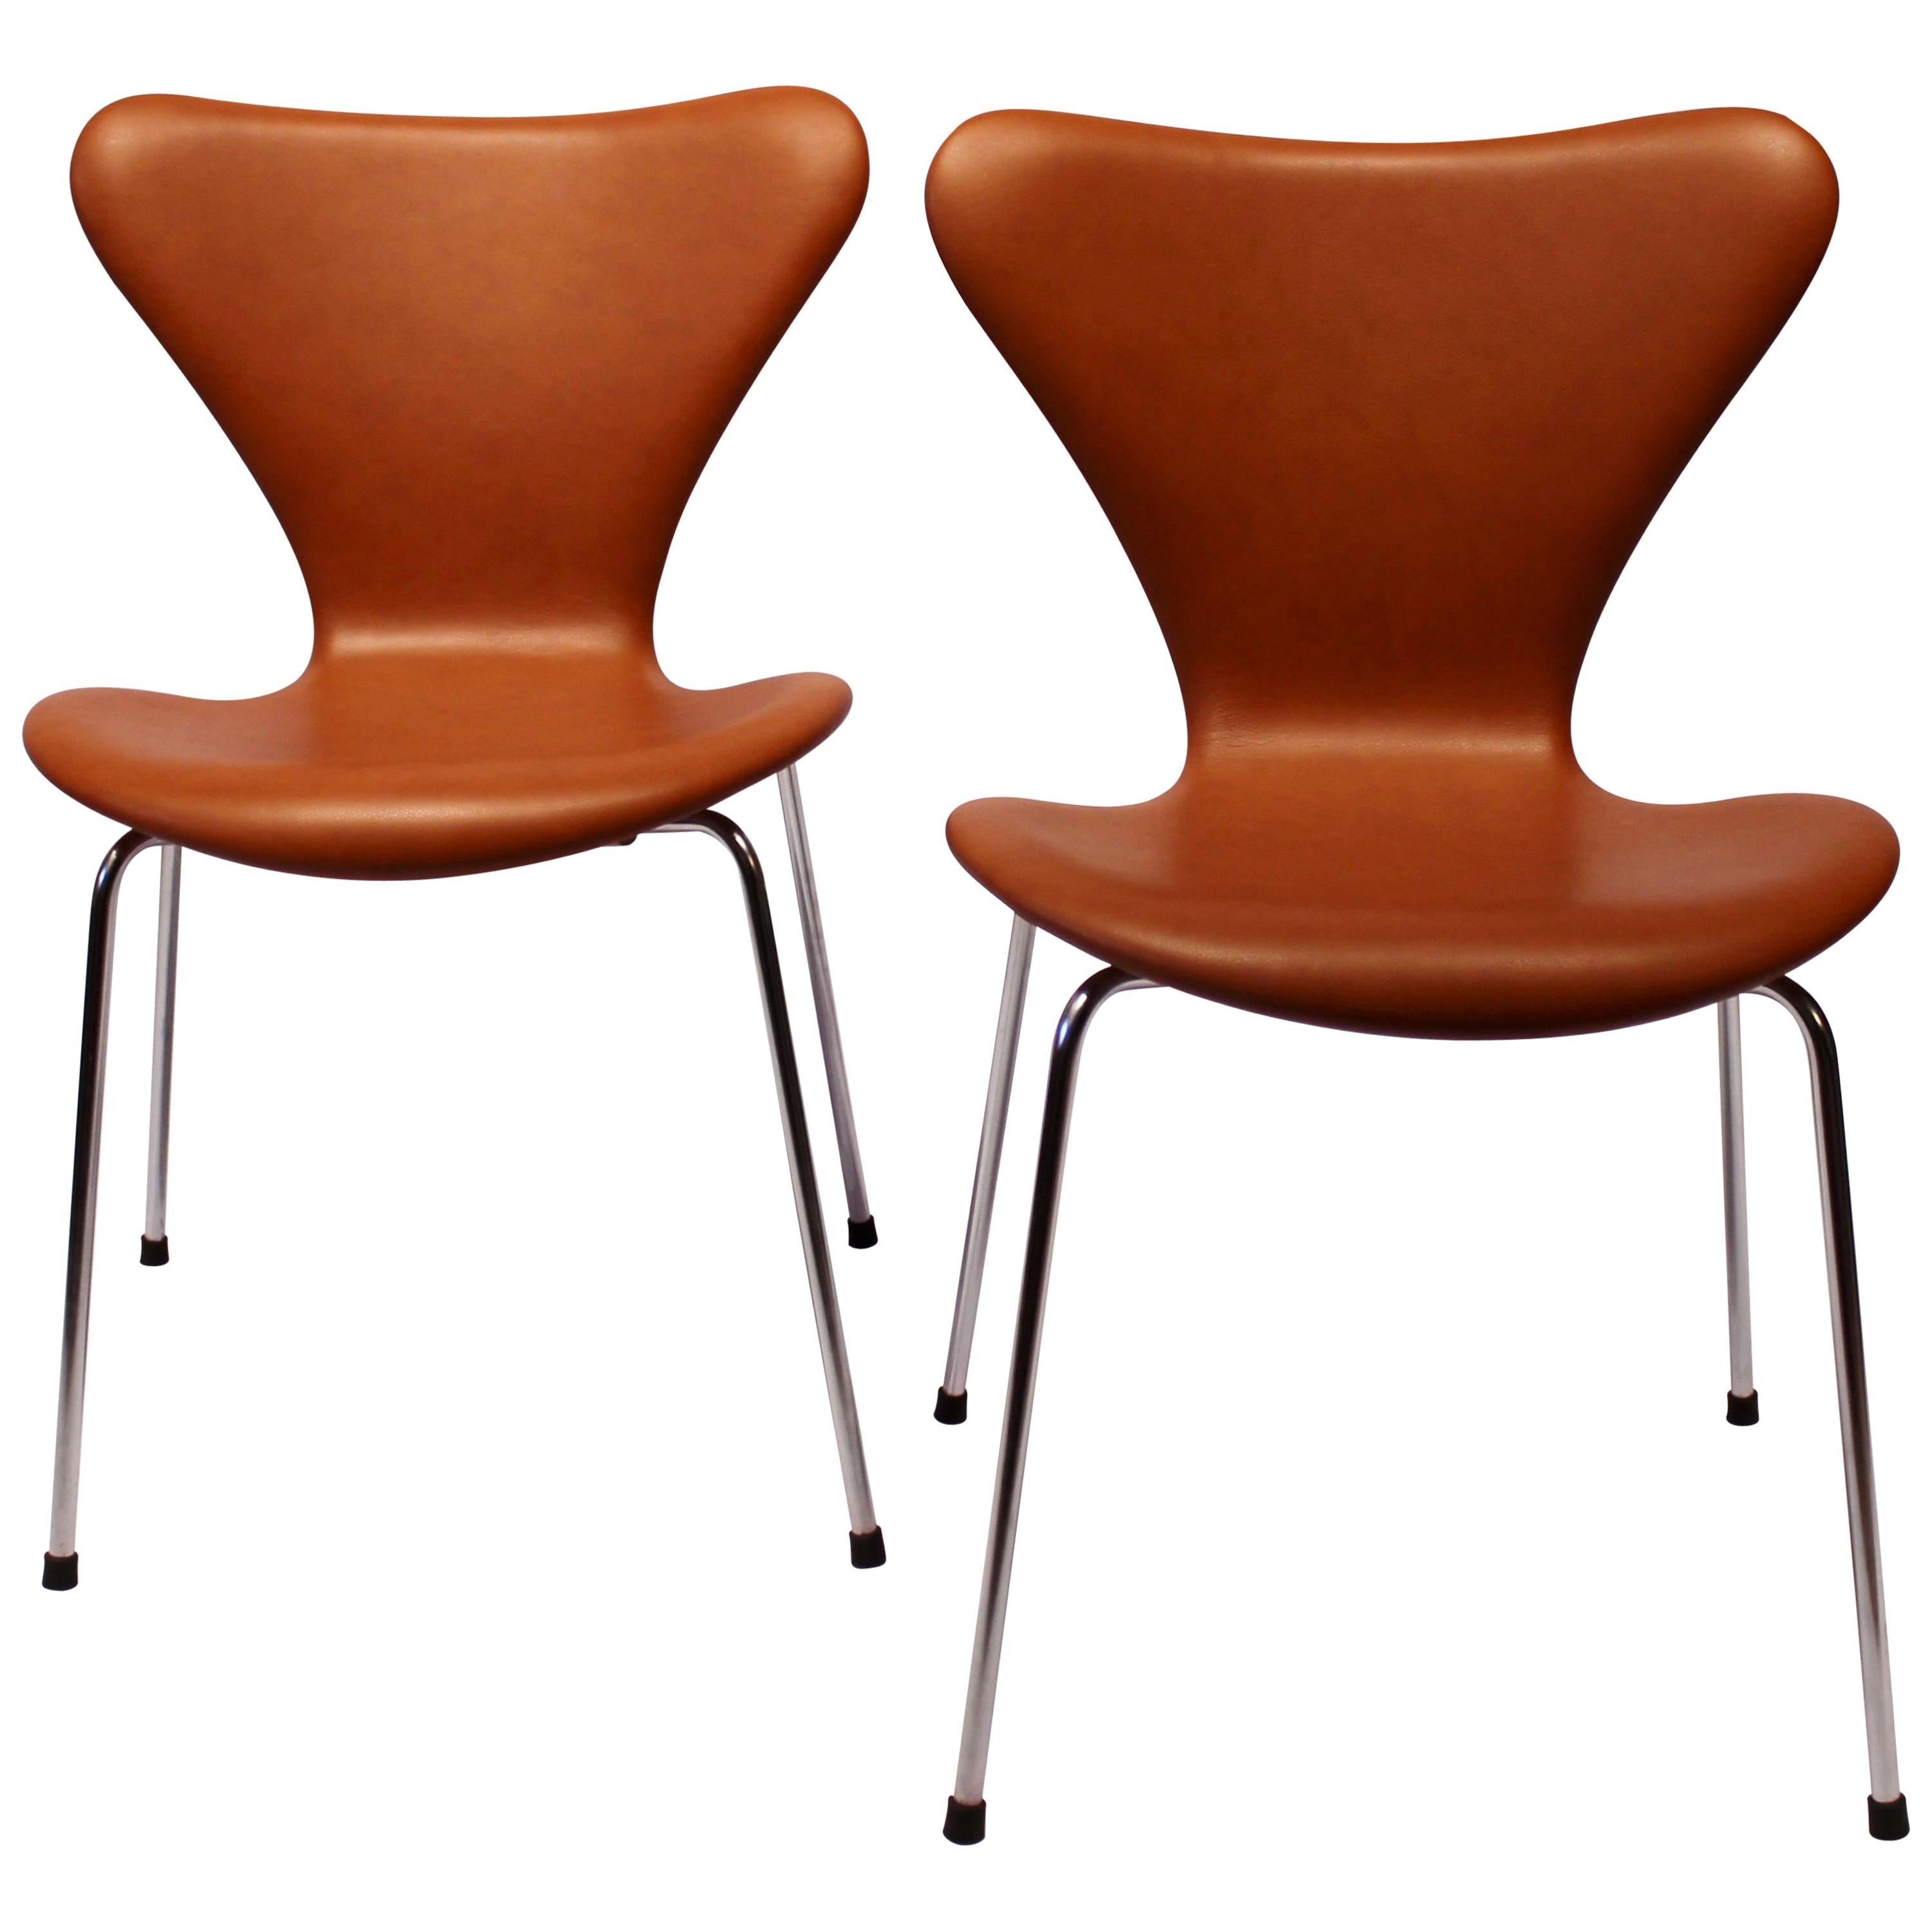 Pair of Series 7 Chair, Model 3107 in Cognac Savanne Leather by Arne Jacobsen